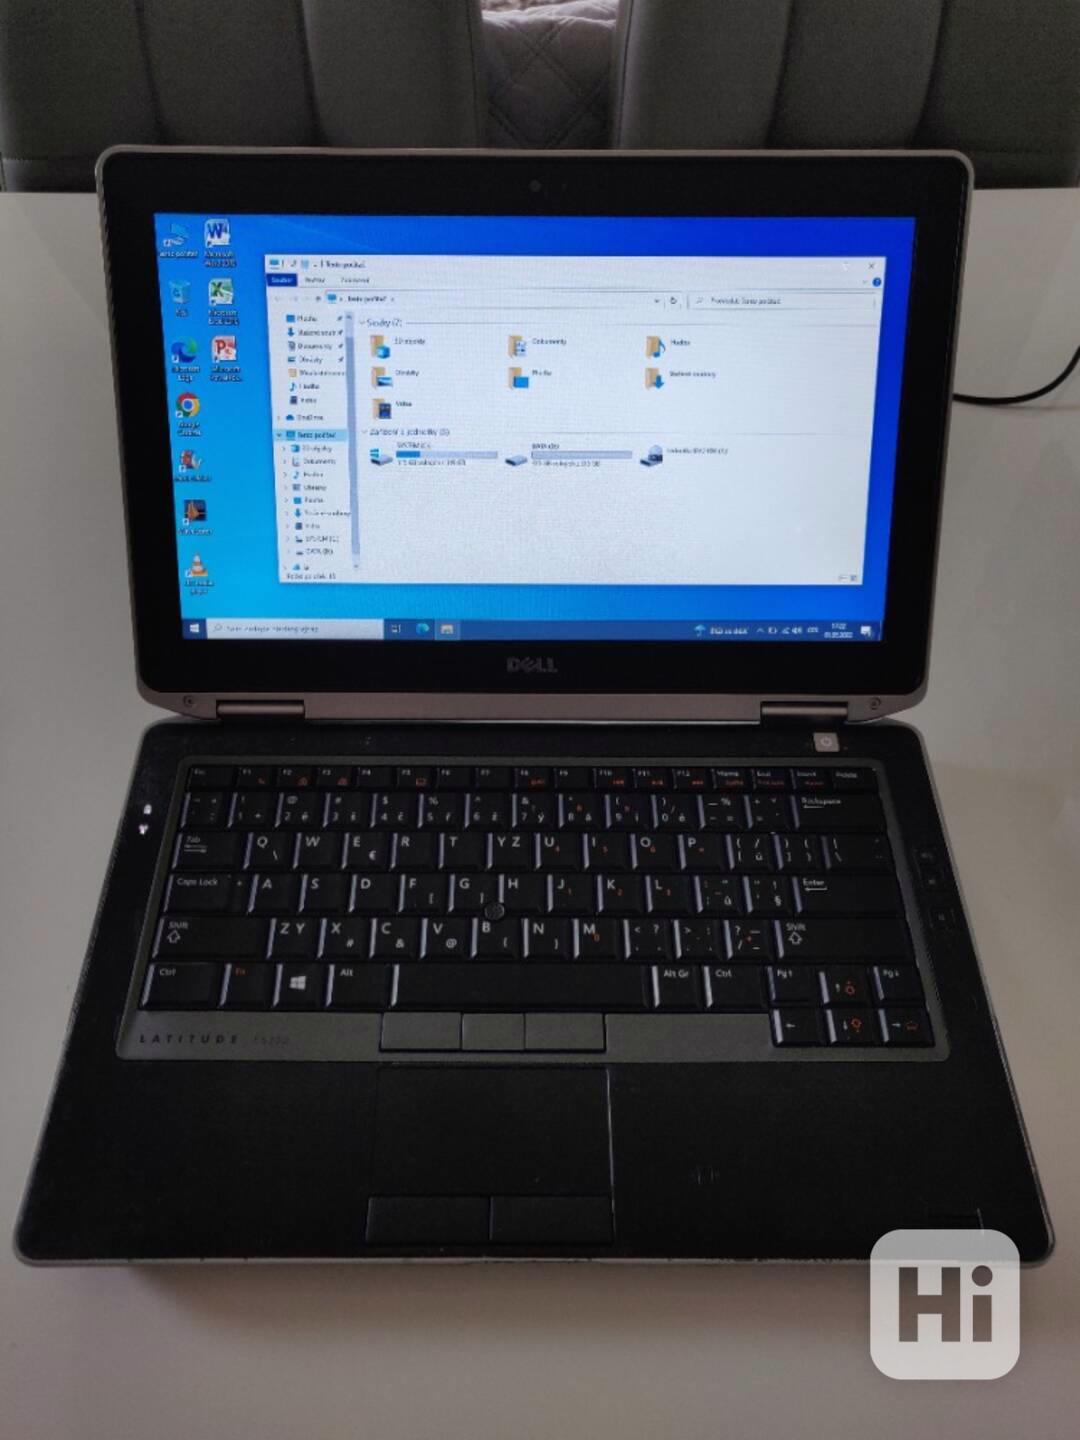 Notebook DELL Latitude E6330 8GB RAM/500GB HDD - foto 1